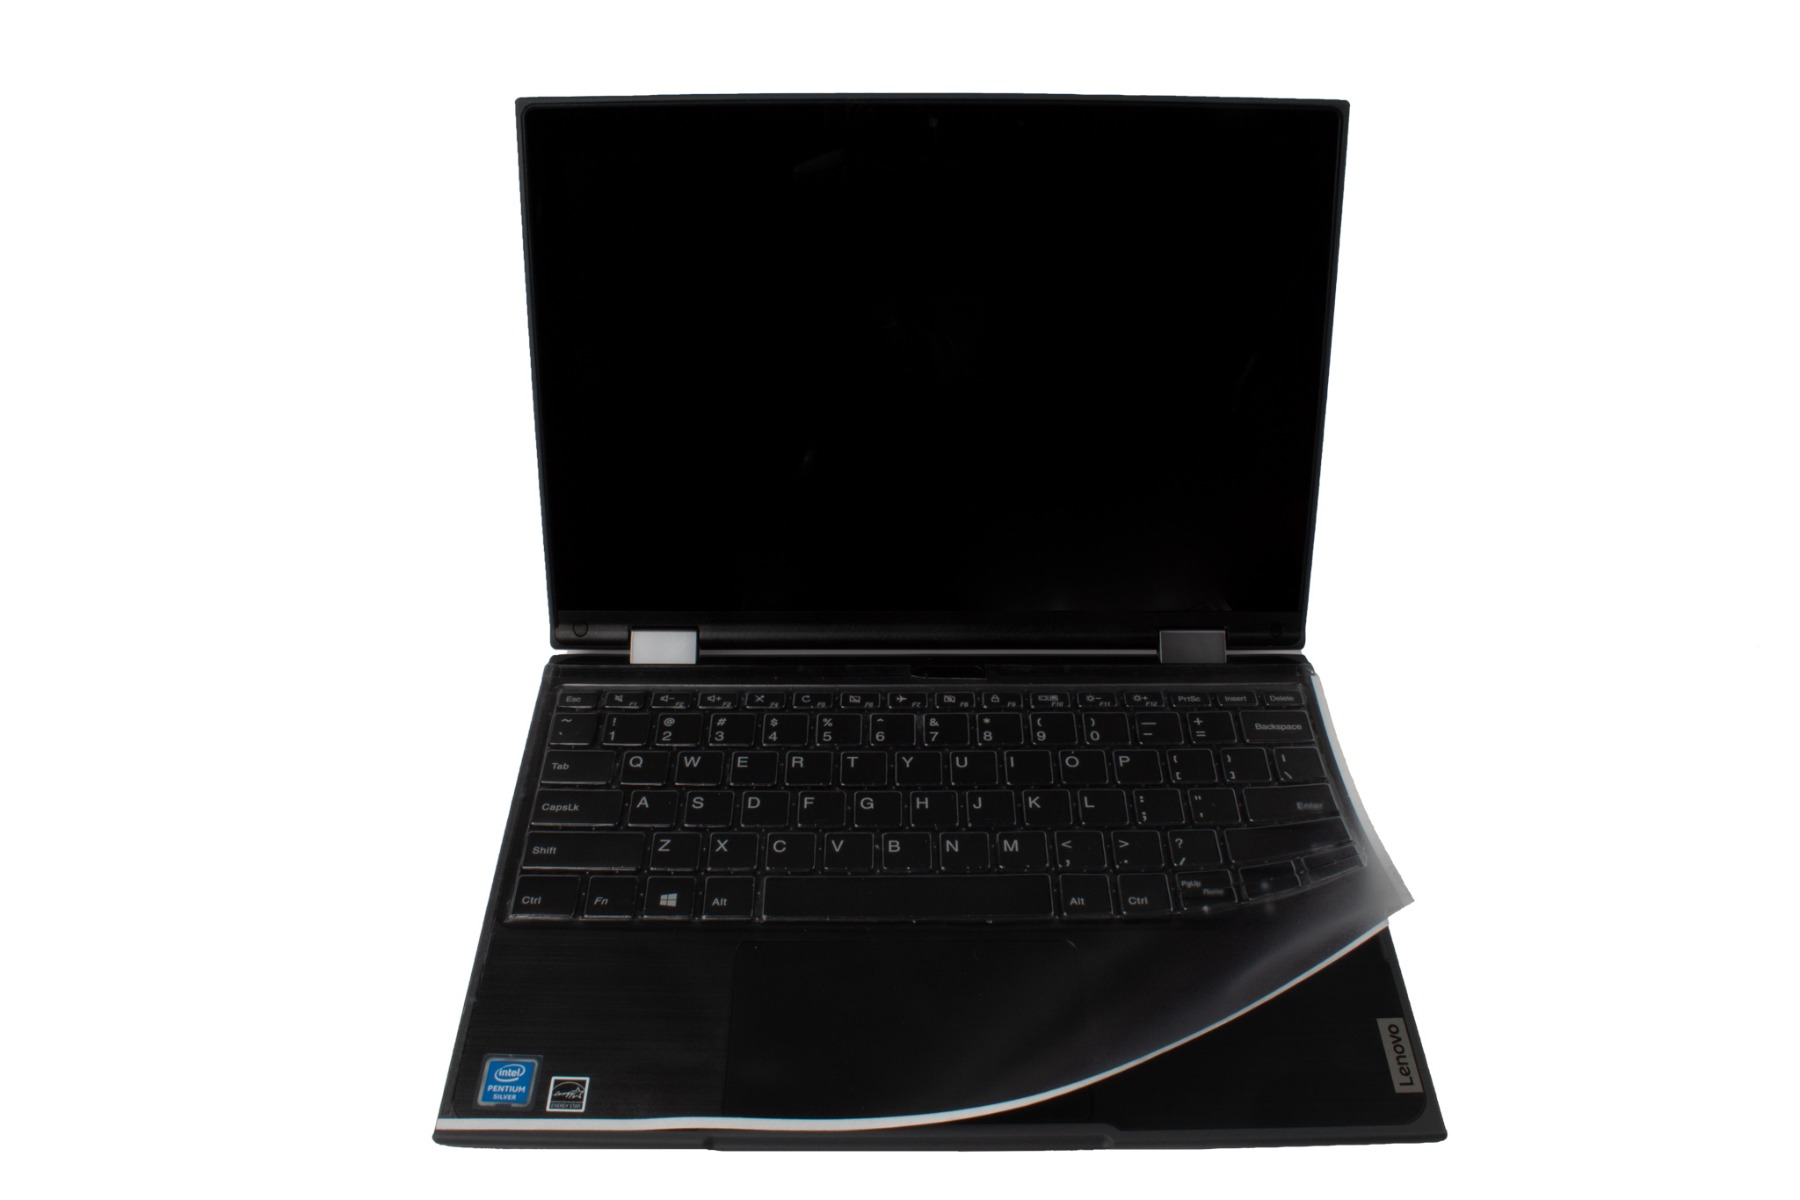 Lenovo 300E Windows 2nd Gen Laptop Cover